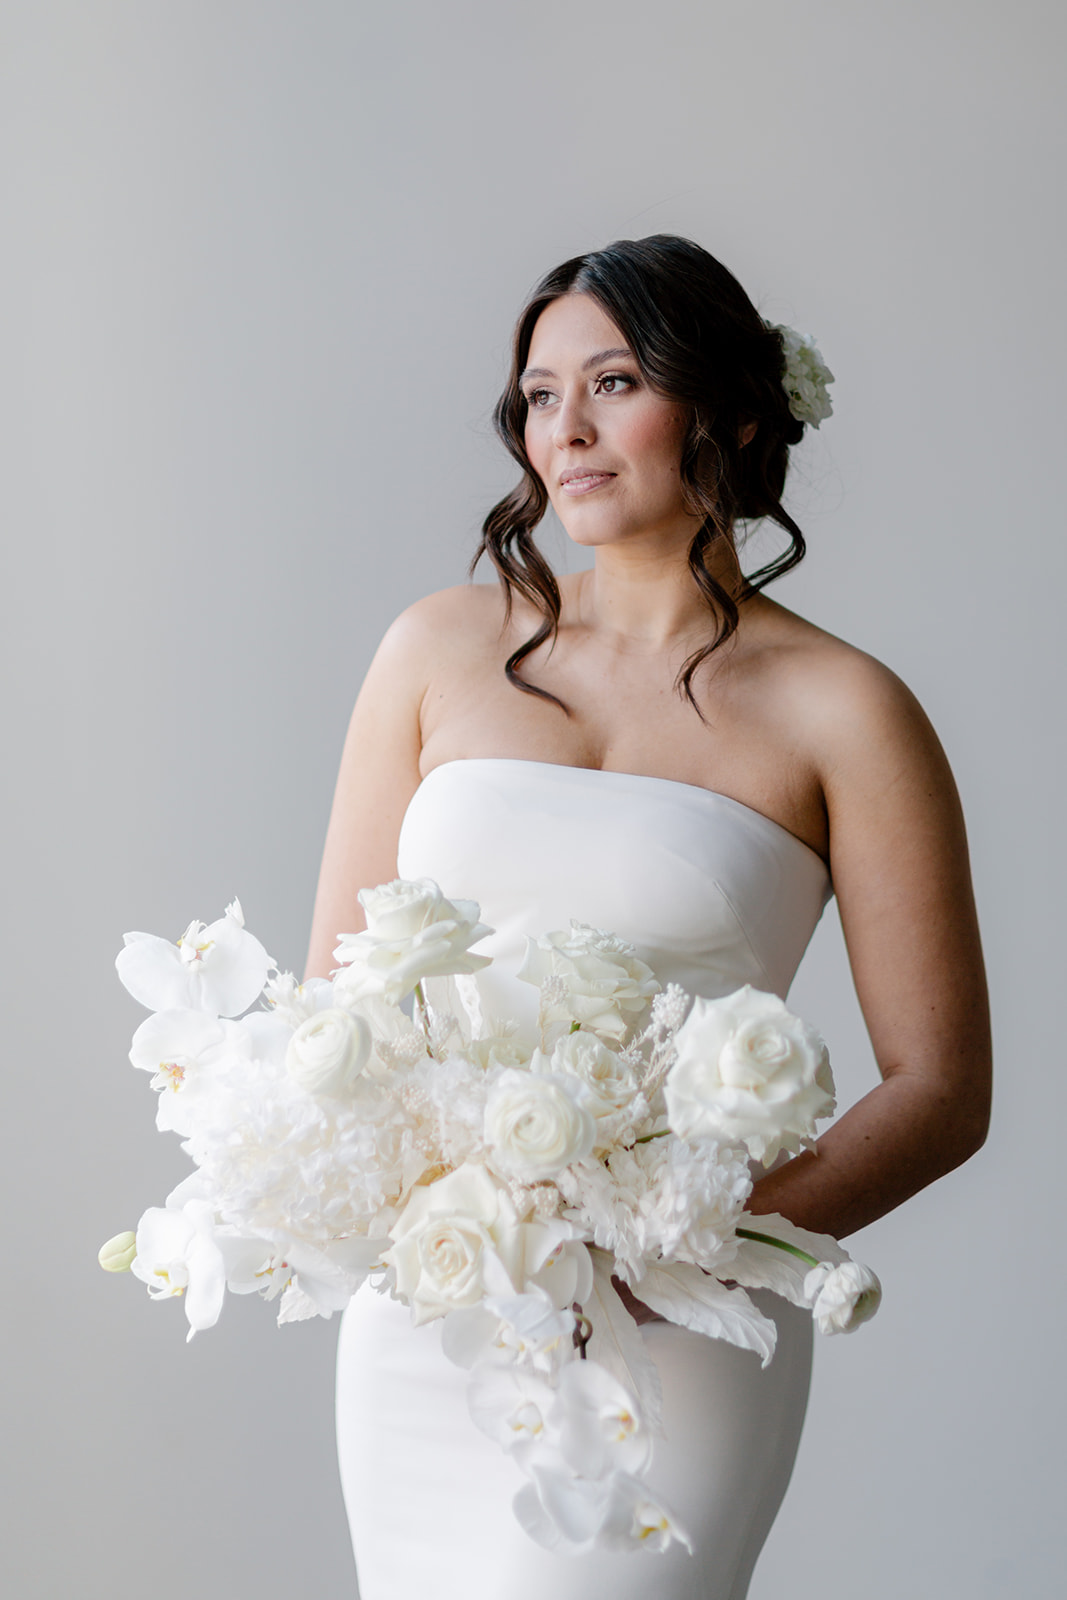 Bride wearing sleek and elegant gown by Theia at The Brownstone in Calgary, Alberta. Bridal hair by Leeanne Pilkington Makeup Artistry.